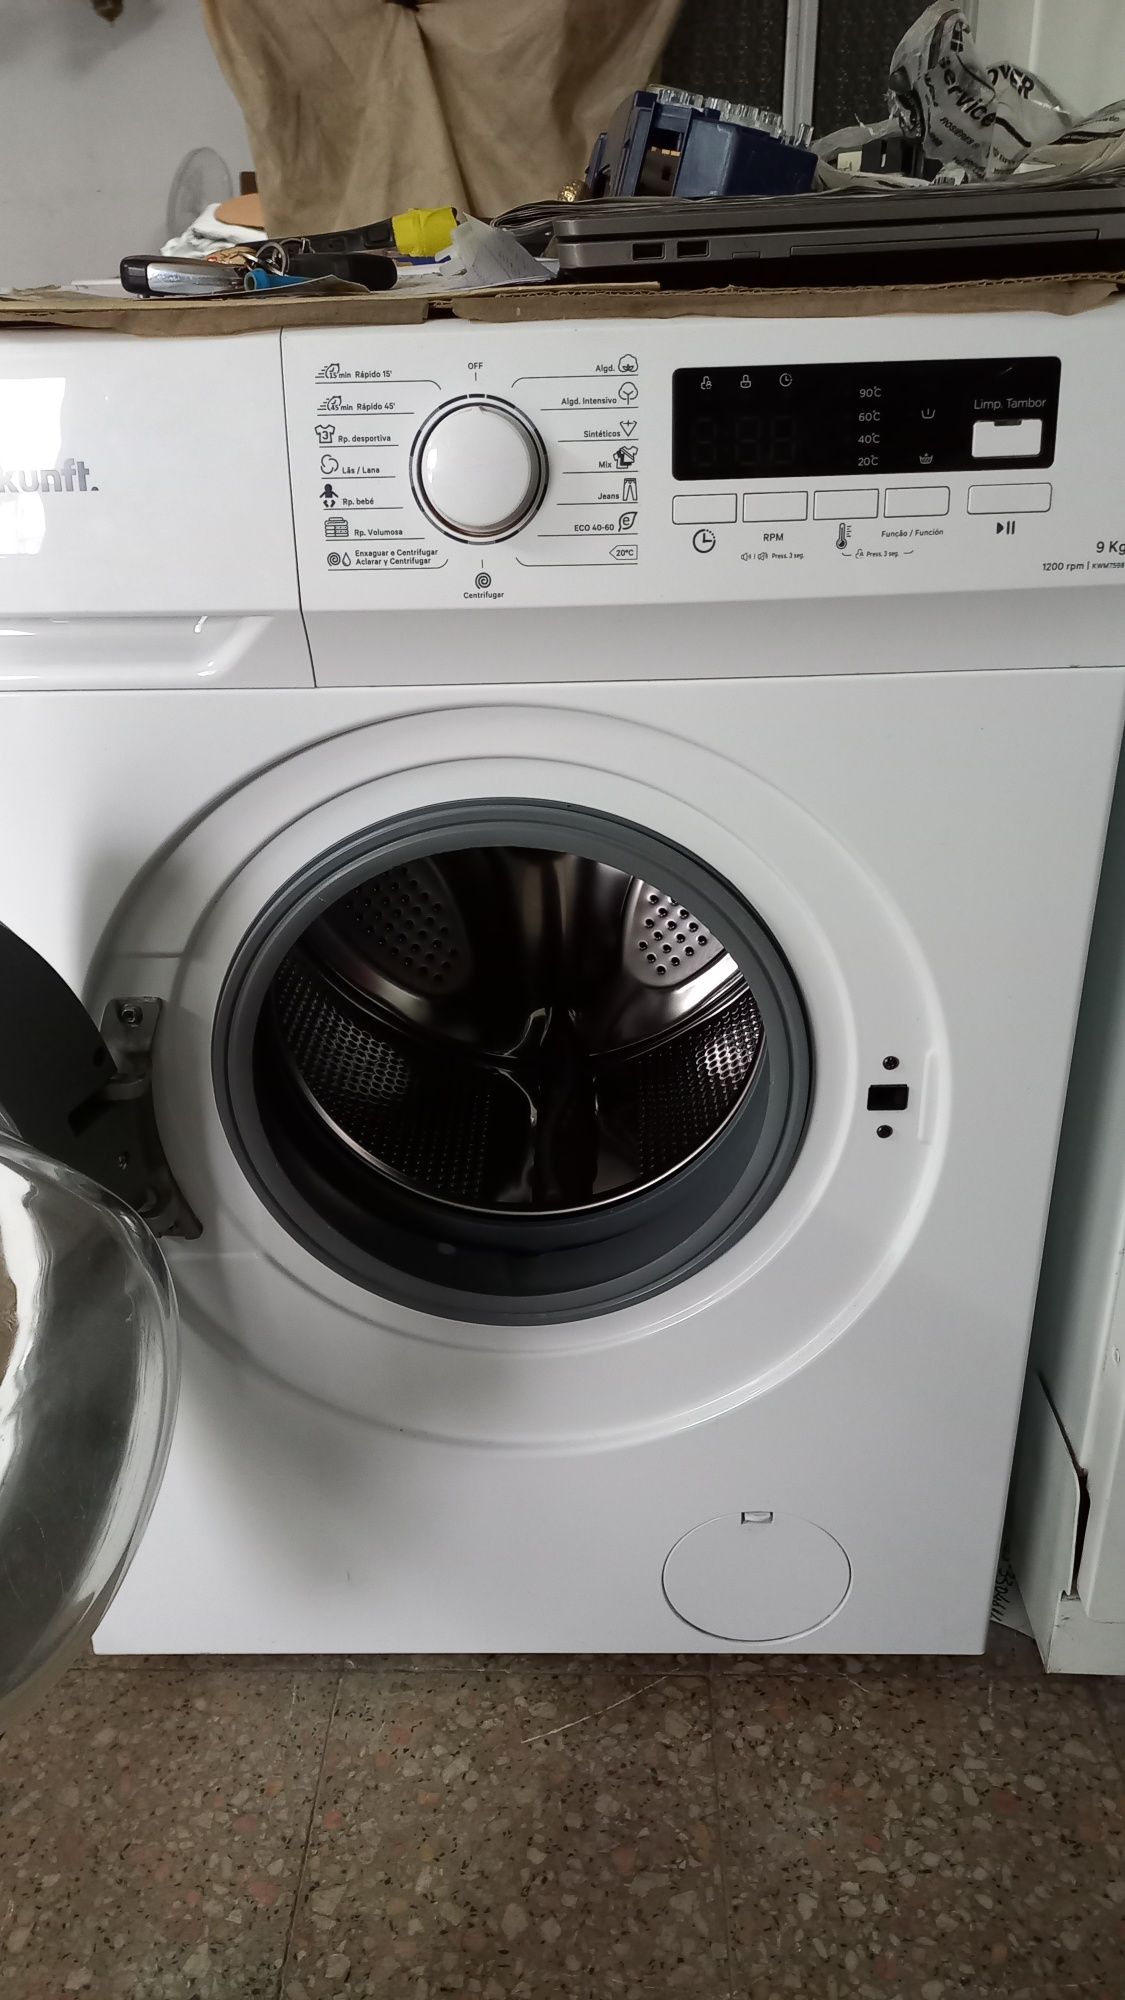 Maquina de lavar kunft 9 kg